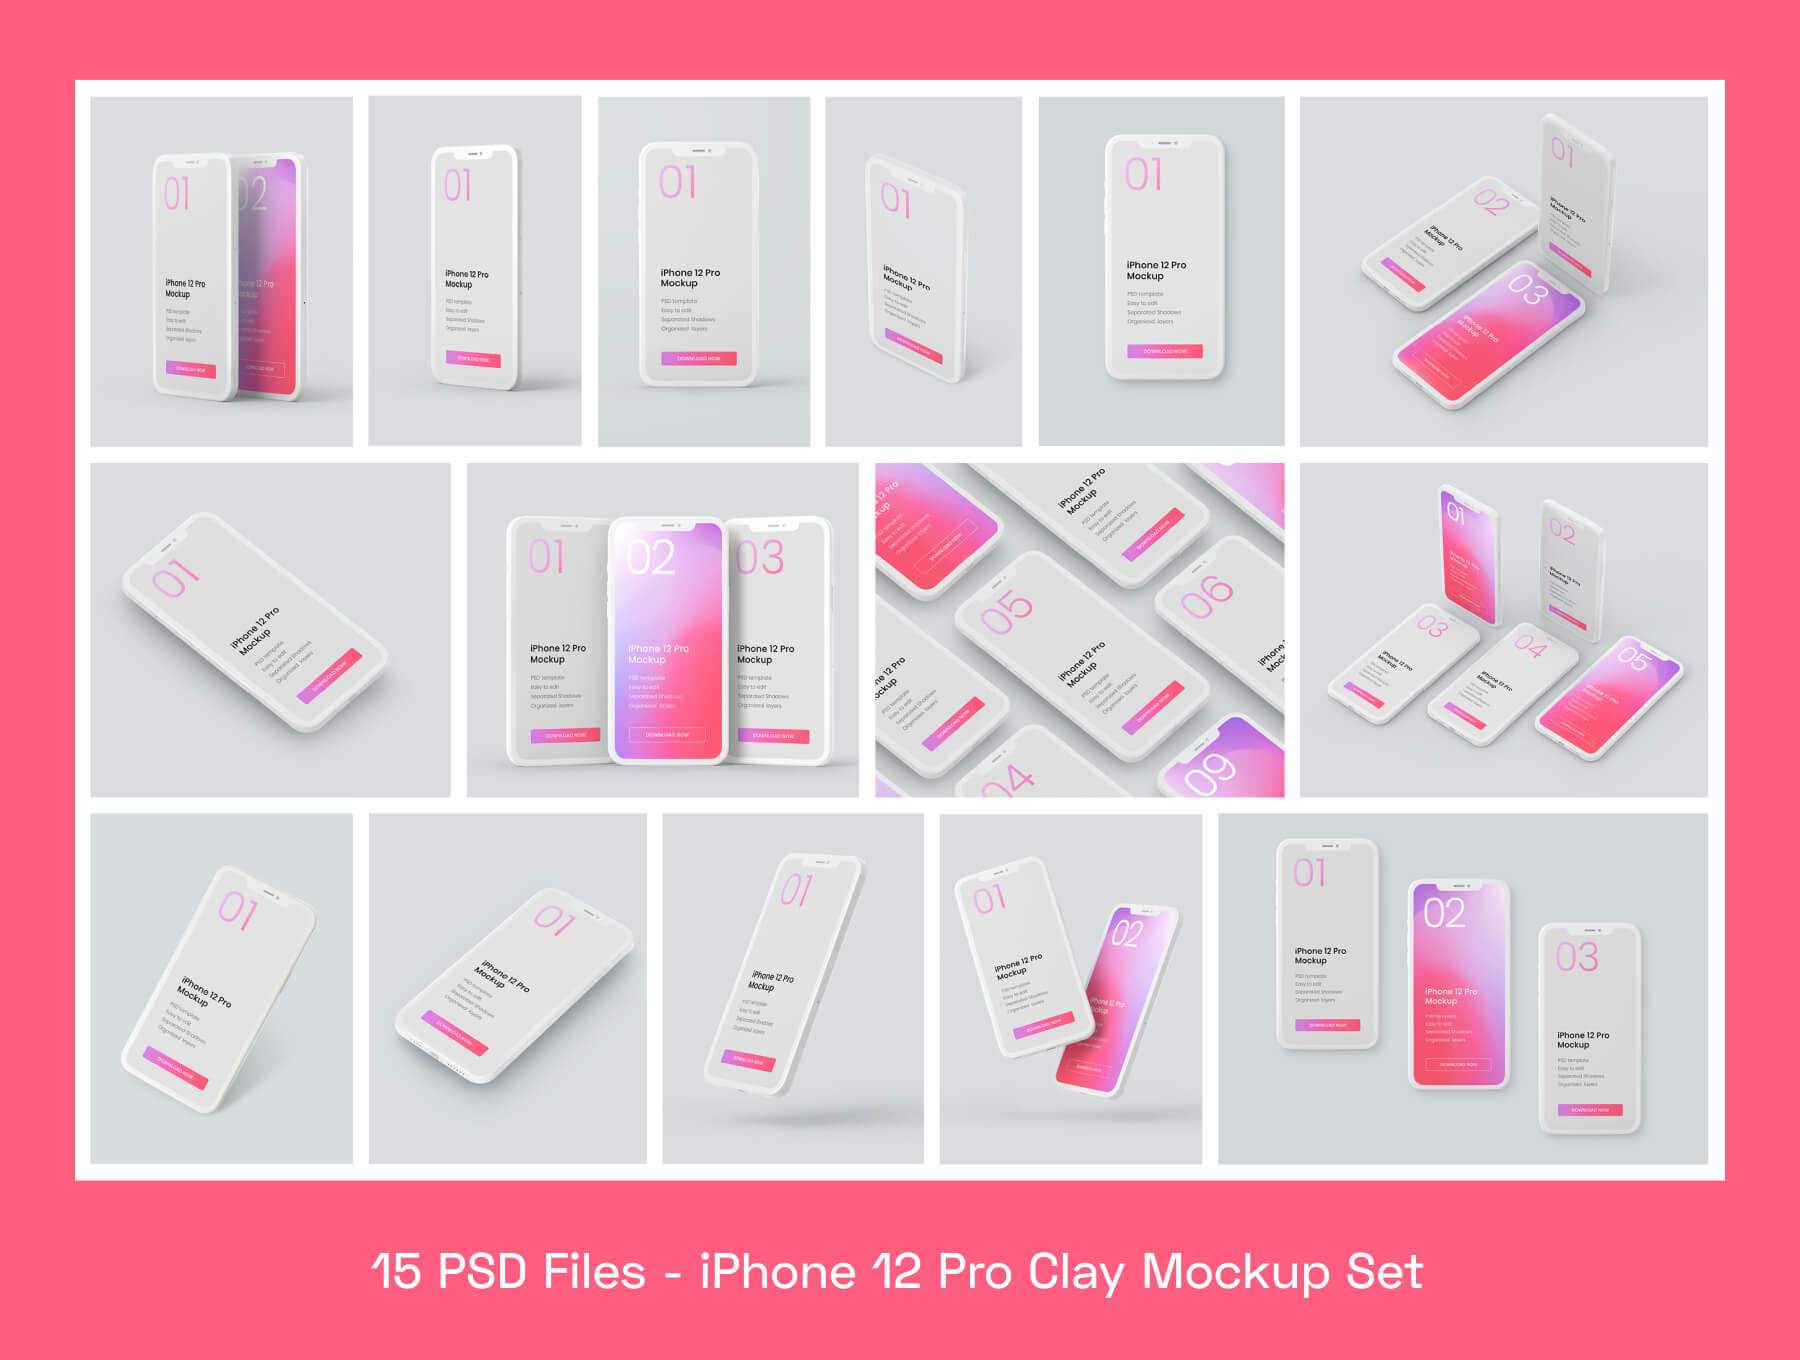 简约概念化iPhone 12 Pro模型样机素材/UI设计作品包装模版下载插图1